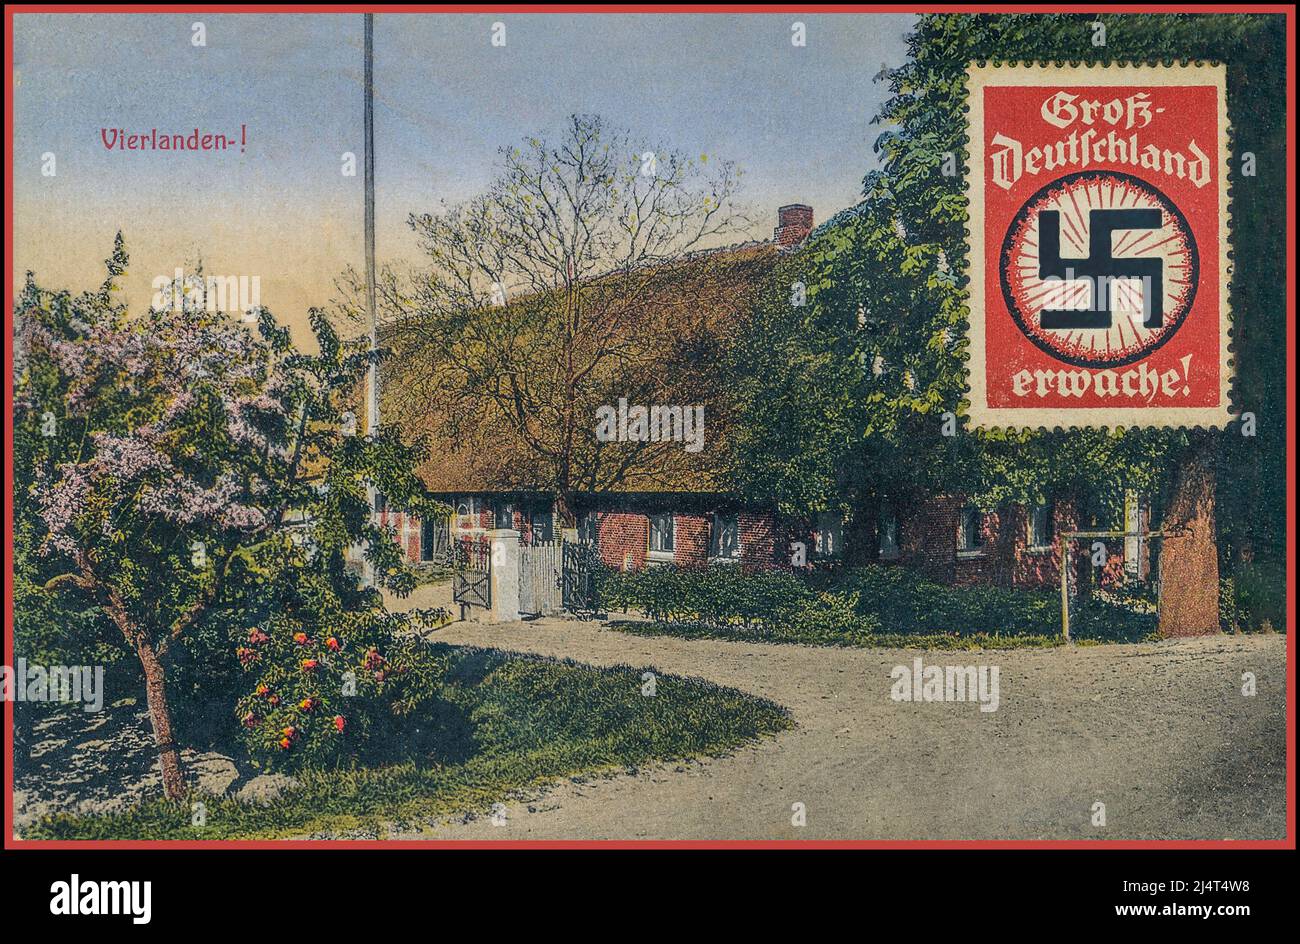 1930s Propaganda Postcard Alemania Nazi para el Vierlanden rural Hamburgo Alemania 'Gran Alemania Awake ! ''Deutschland Erwache' fue uno de los dichos favoritos de Adolf Hitler, especialmente en la preparación de las elecciones de enero de 1933, cuando fue nombrado Canciller. Foto de stock